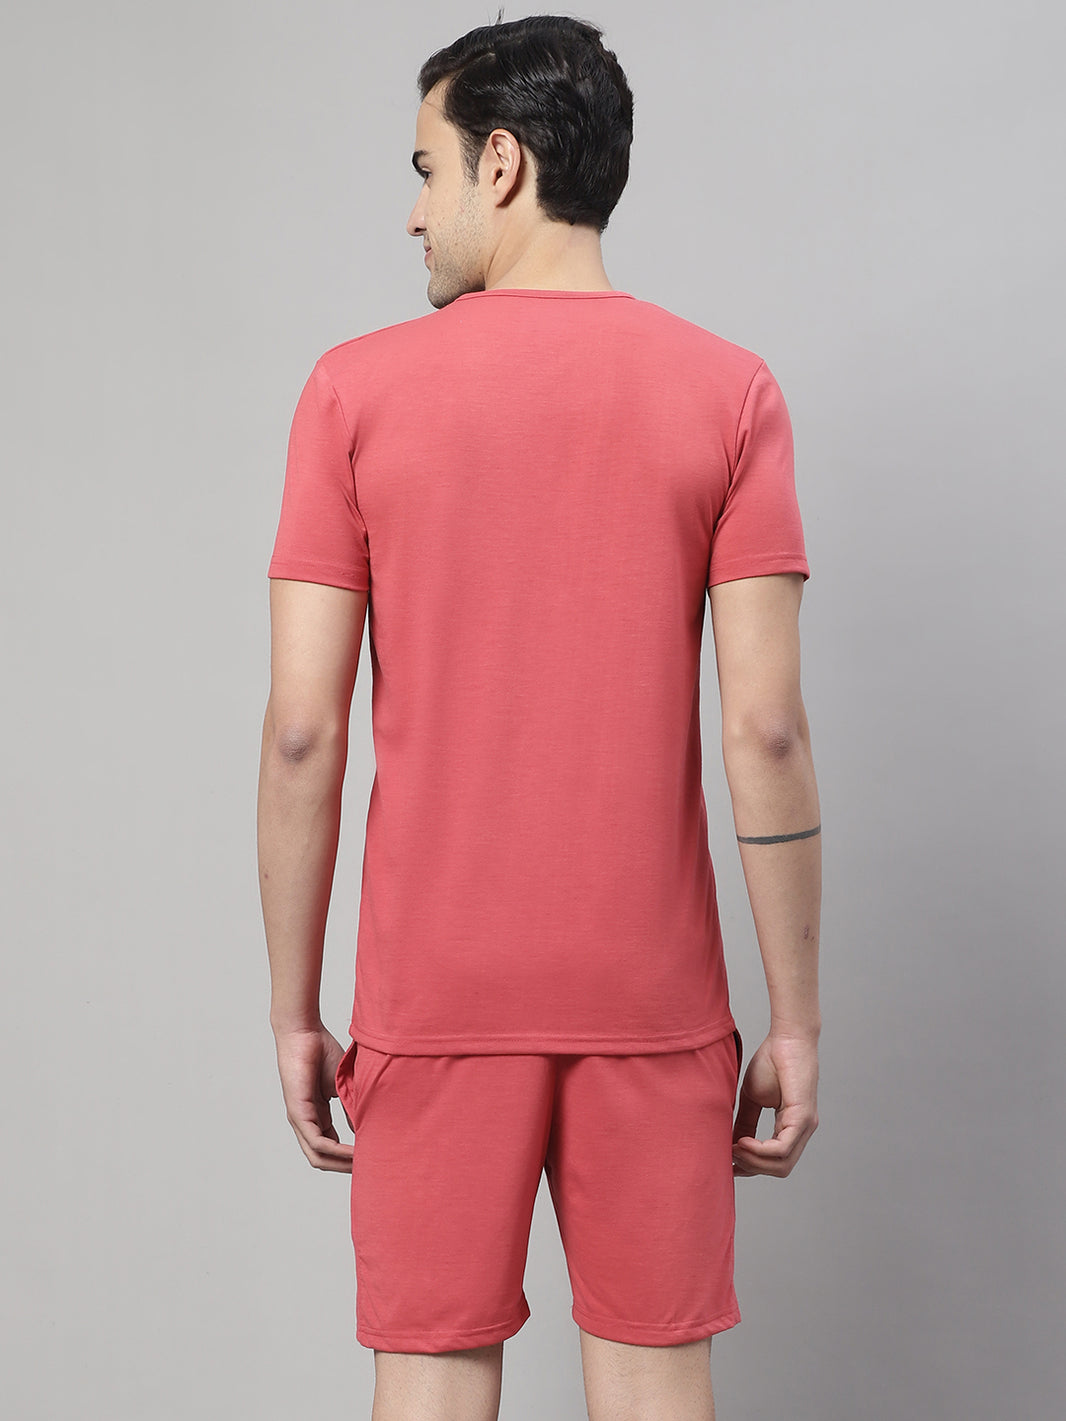 Vimal Jonney Pink Cotton Solid Co-ord Set Tracksuit For Men(Zip On 1 Side Pocket)